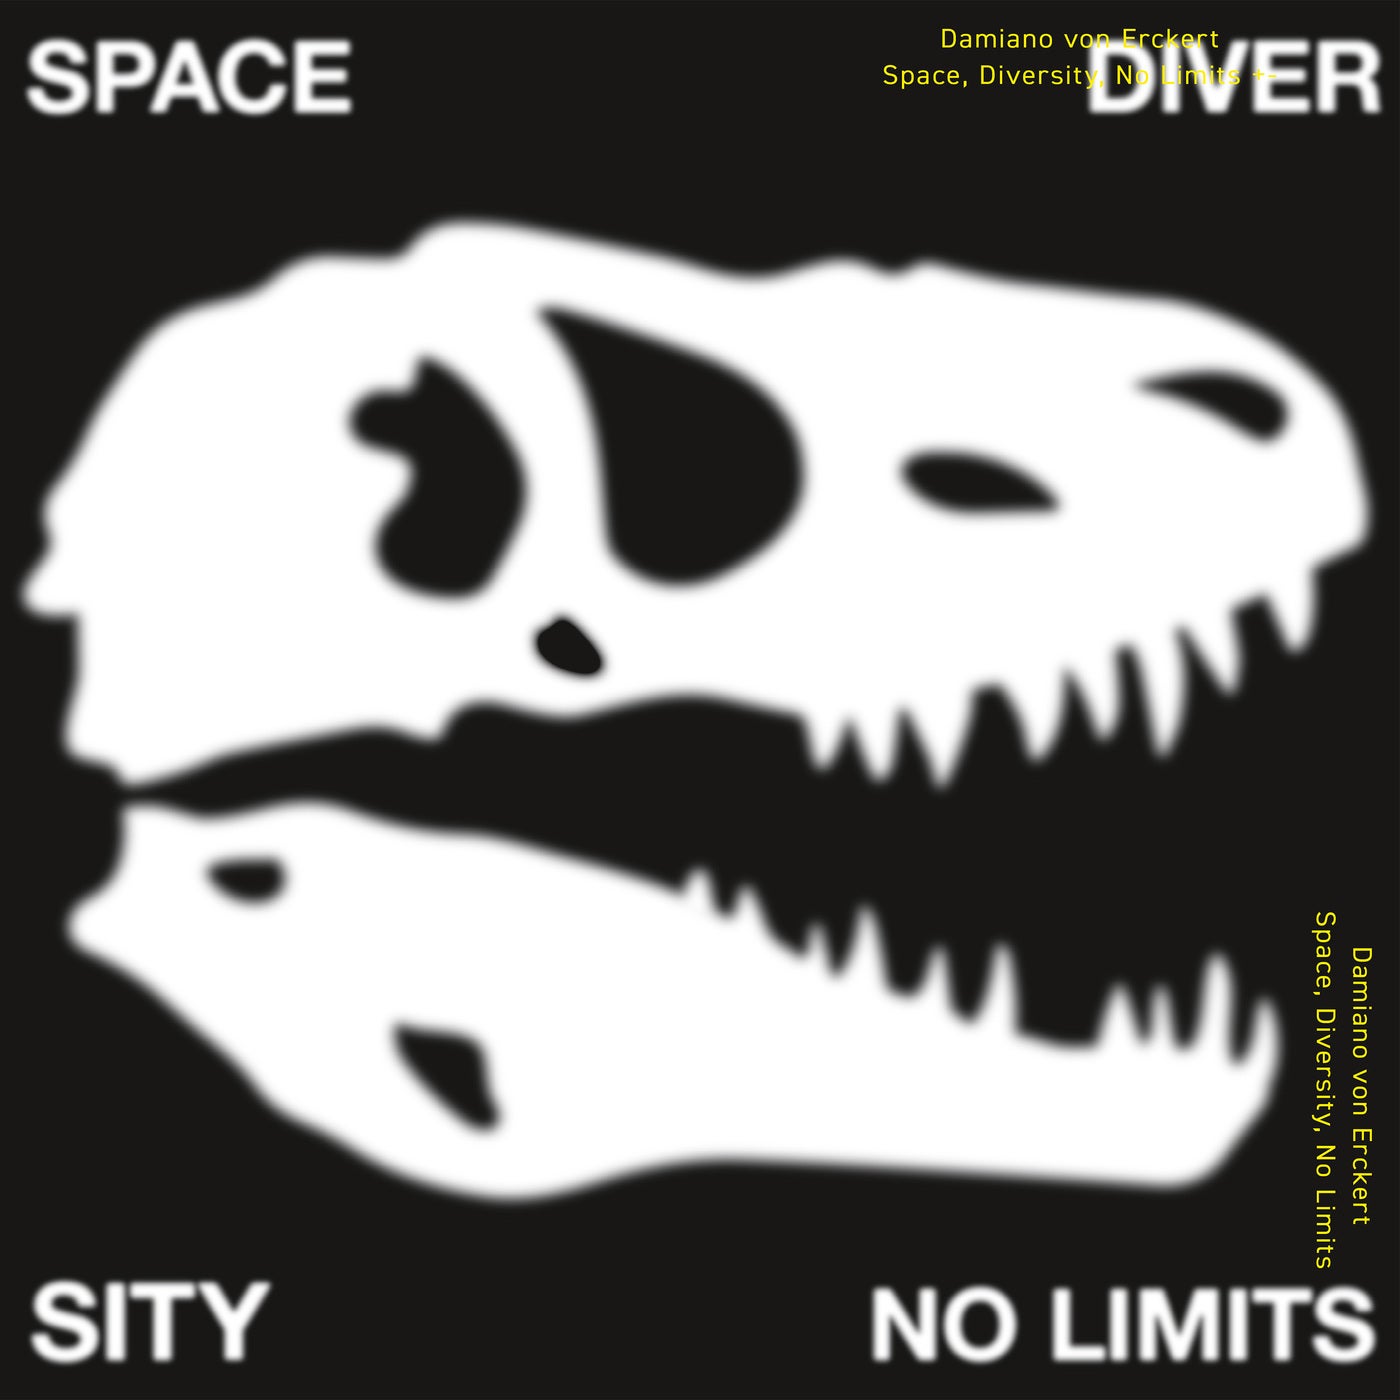 Space, Diversity, No Limits